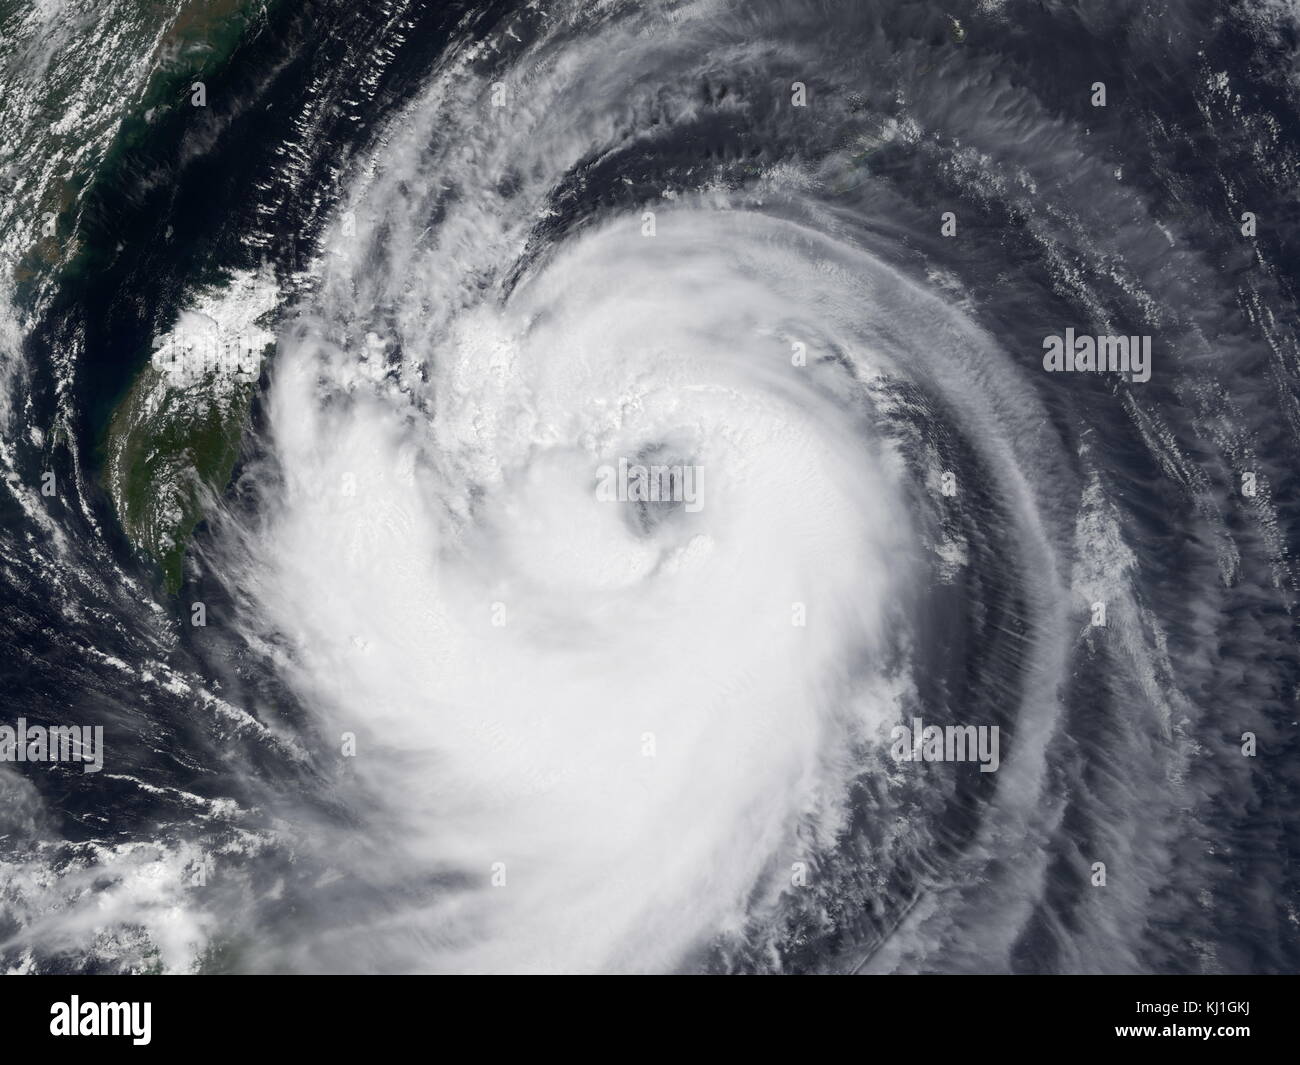 Typhoon Chaba am stärksten tropischen Wirbelsturm im westlichen Pazifik während 2004 und verursacht eine Schwade von Schäden, die sich aus der Marianen zu Japan von August bis September dieses Jahres. Chaba war der Japan zweite teuerste Sturm während der Saison, nur hinter Songda im September, und erreichte als Taifun mit maximal unterstützte Winde gleichwertig mit der eines Kategorie 5 auf der Saffir-Simpson Hurrikan wind skalieren. Stockfoto